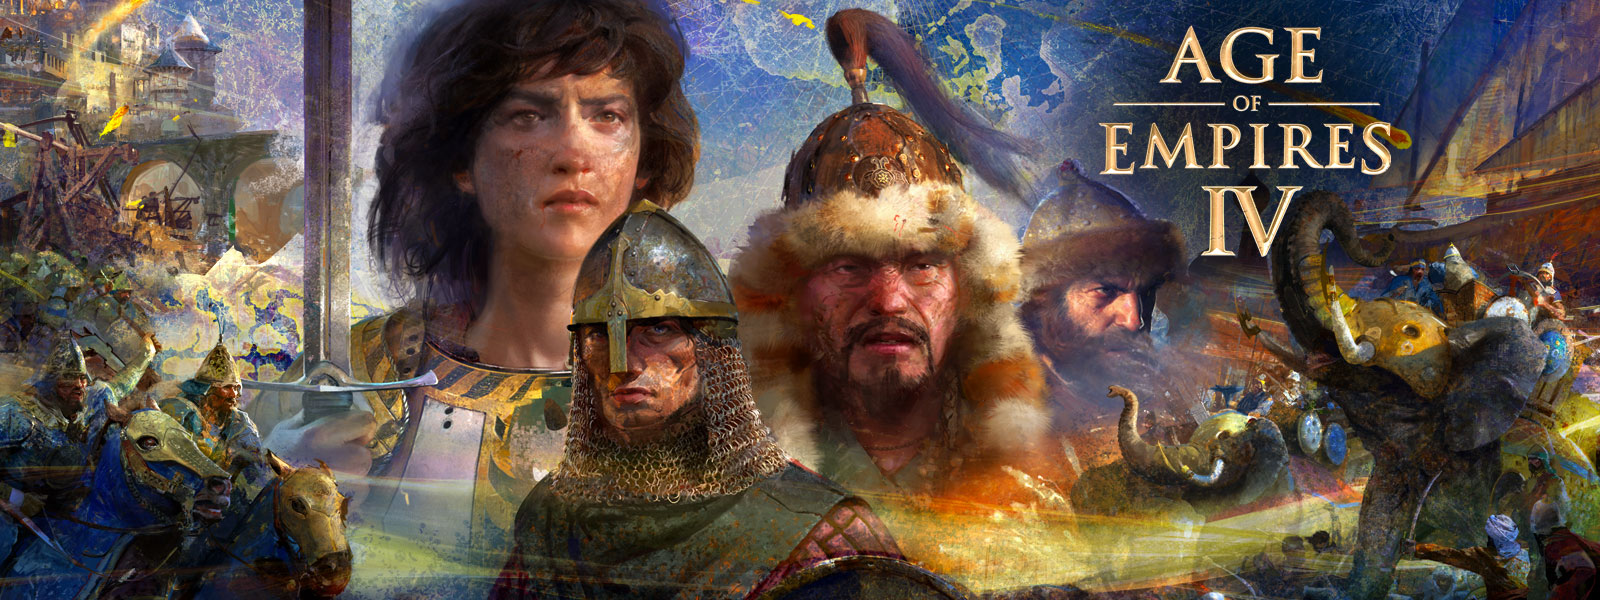 Age of Empires IV. Čtyři postavy, kolem kterých jsou válečné výjevy, sloni a válečníci na koních, a na pozadí je mapa.